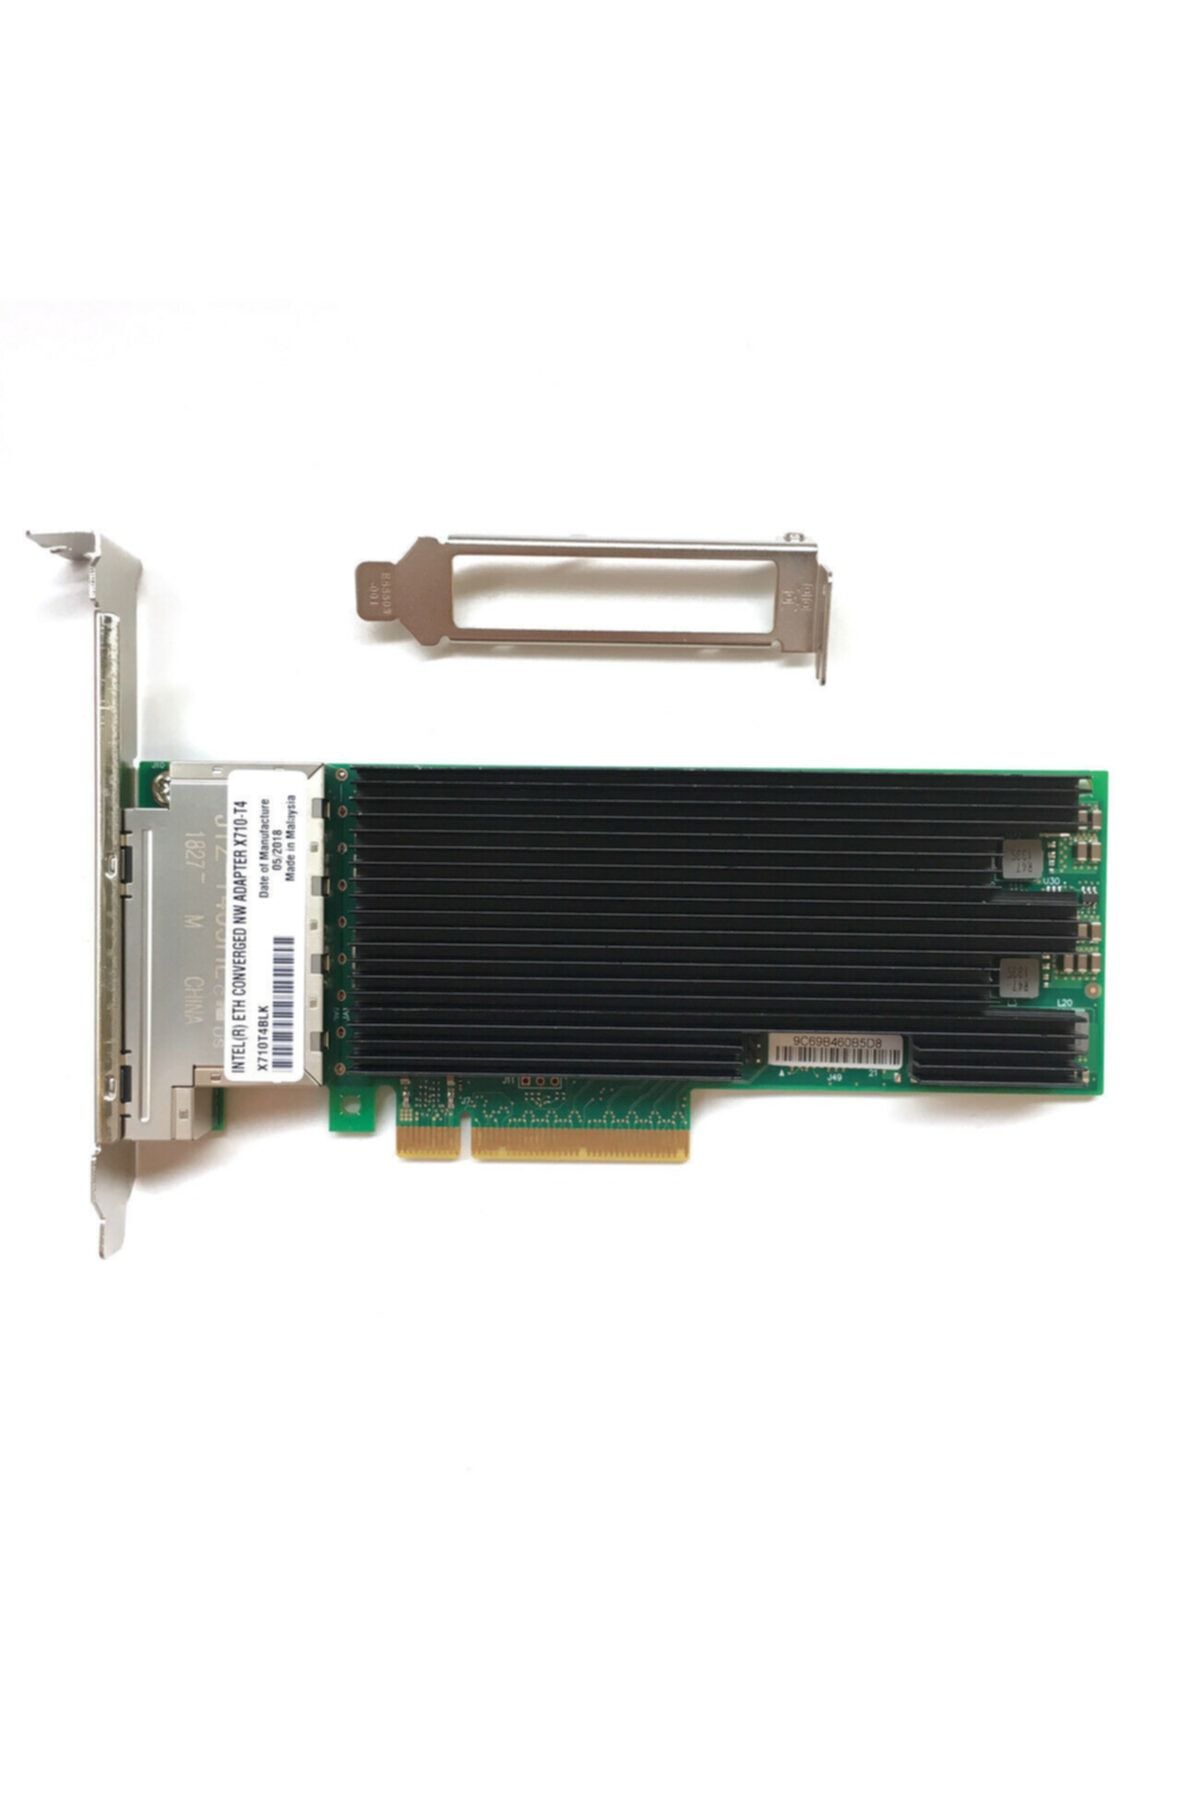 Intel X710-t4 Quad / 4 Port 10gbe Pcı-x8 Ethernet Kart - X710t4blk